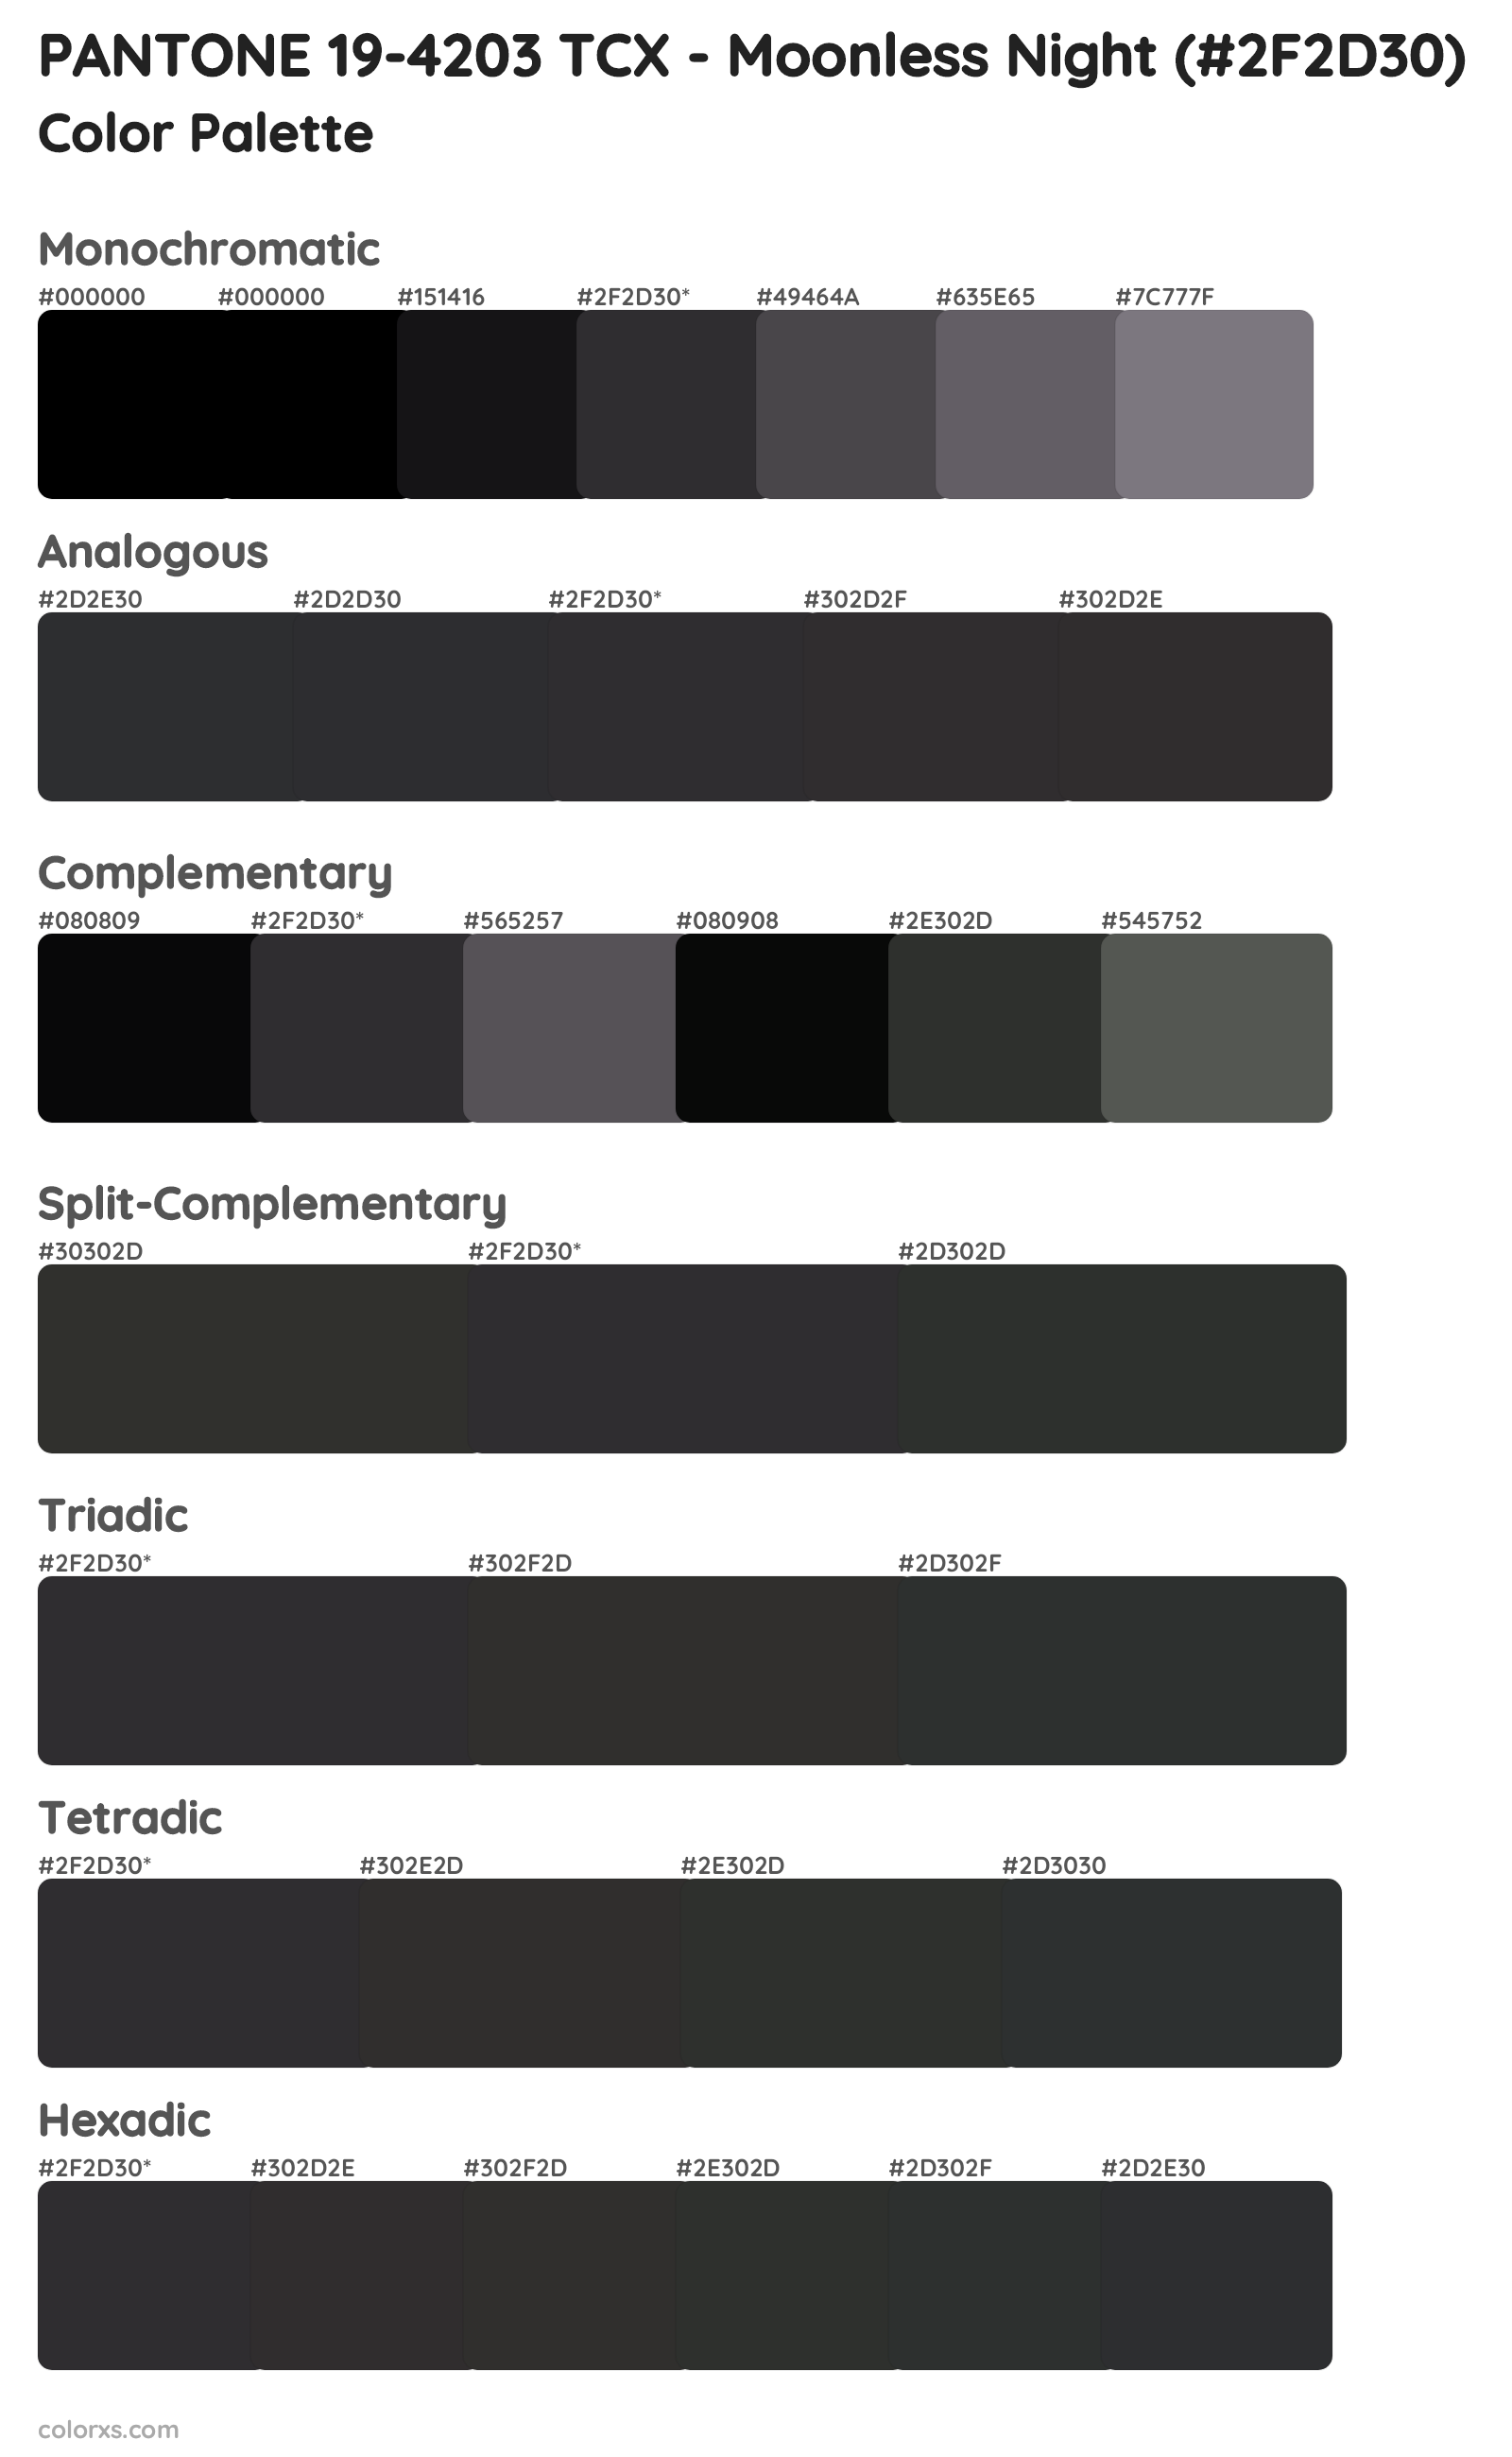 PANTONE 19-4203 TCX - Moonless Night Color Scheme Palettes